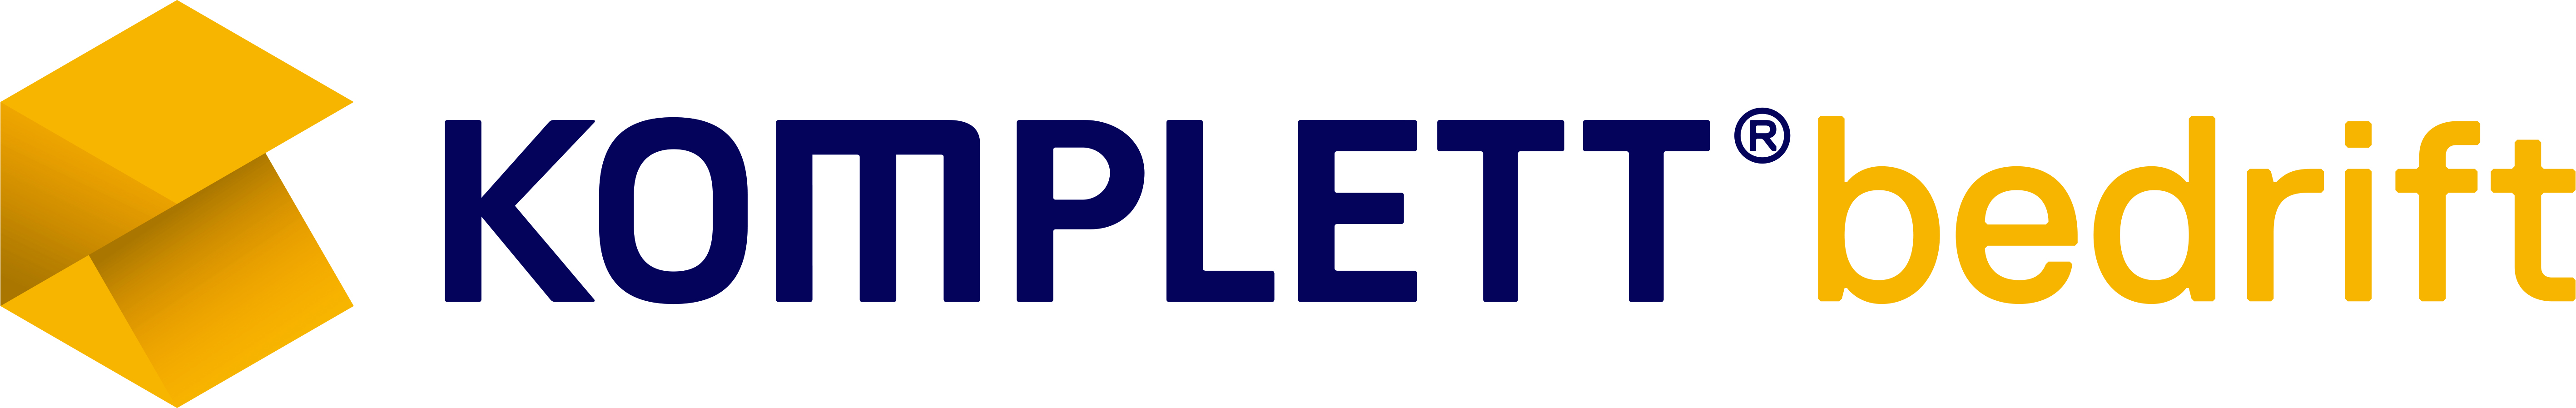 KomplettBedrift_logo